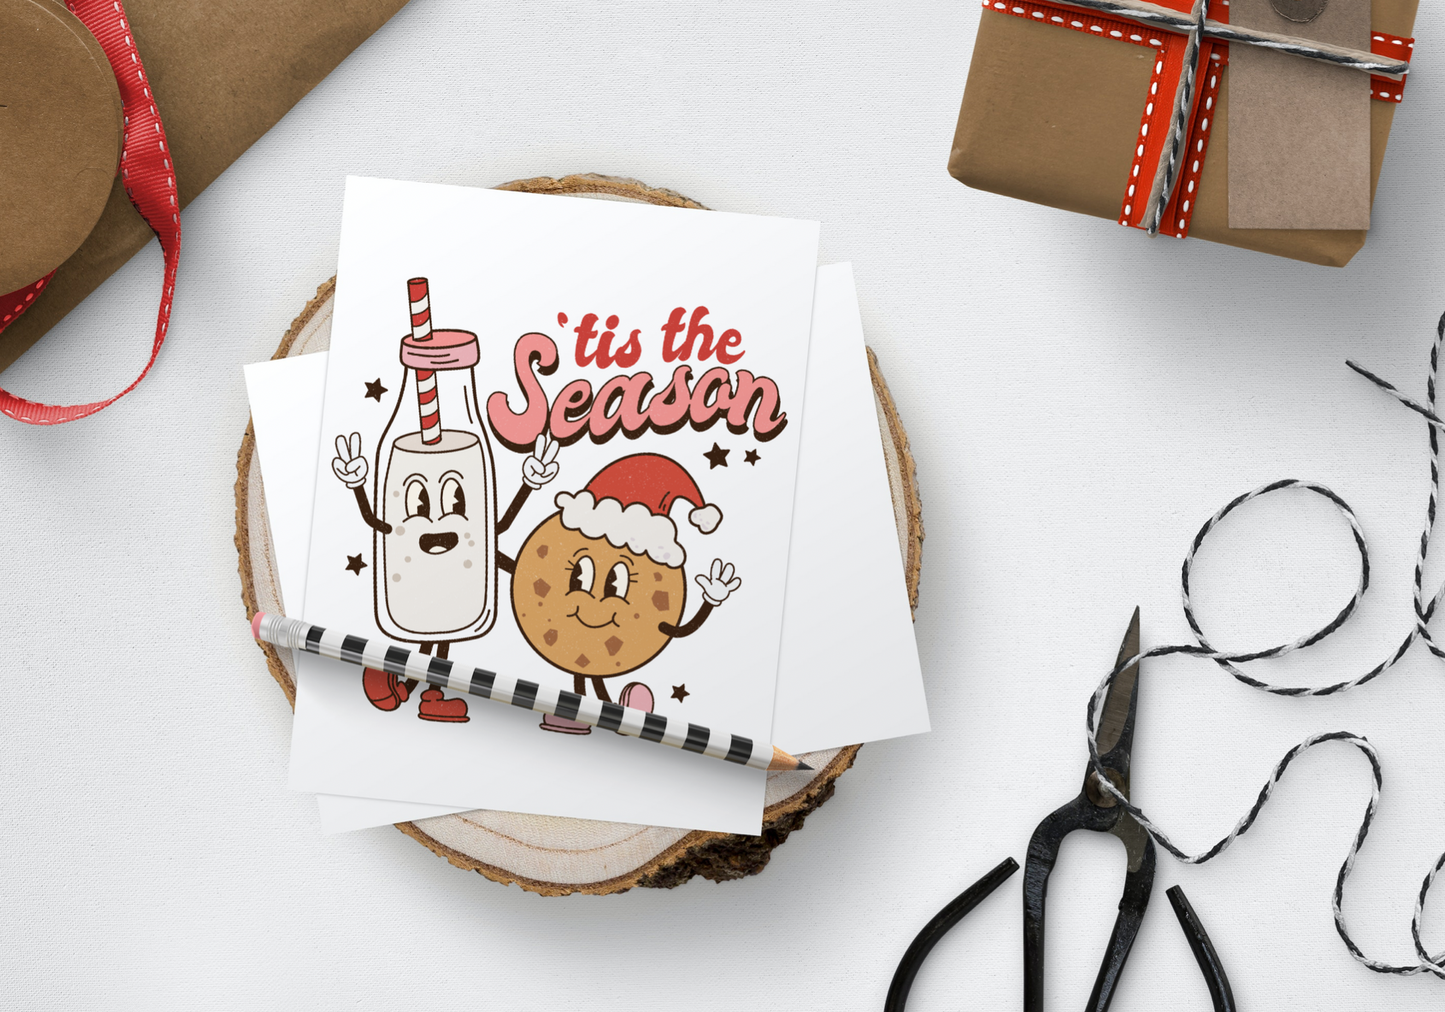 Tis’ The Season Mini Christmas Card